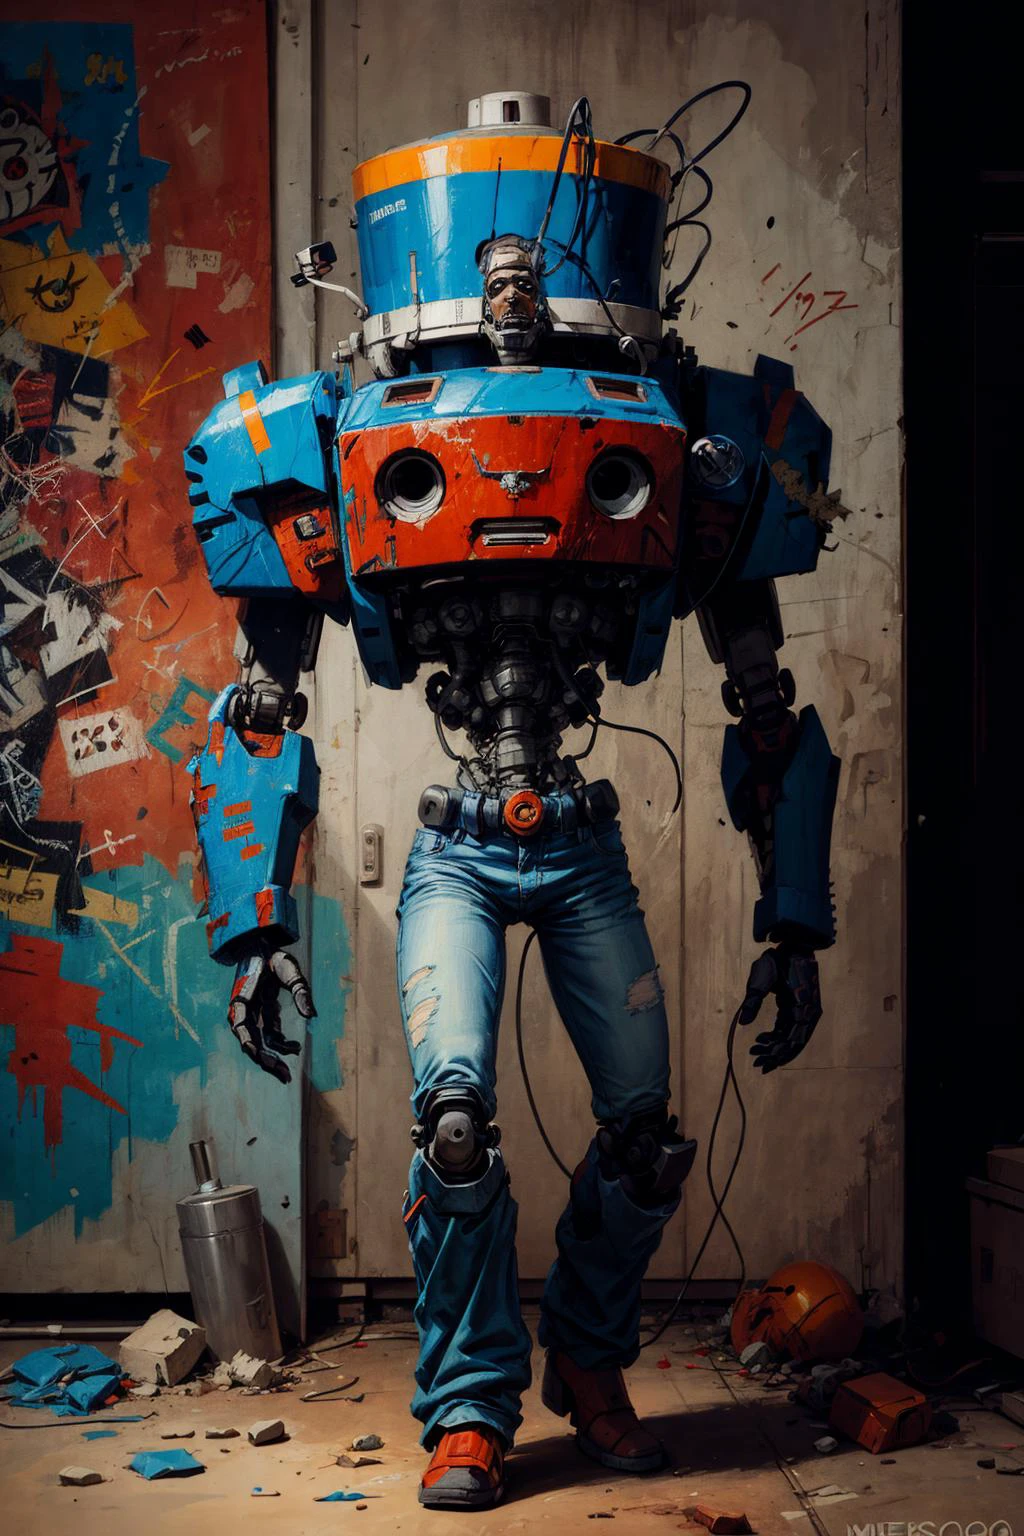 1 روبوت, ميكا,  غرفة مظلمة منفردة,   ضوء خافت
(اللوحة الرقمية جان ميشيل باسكيات)
 